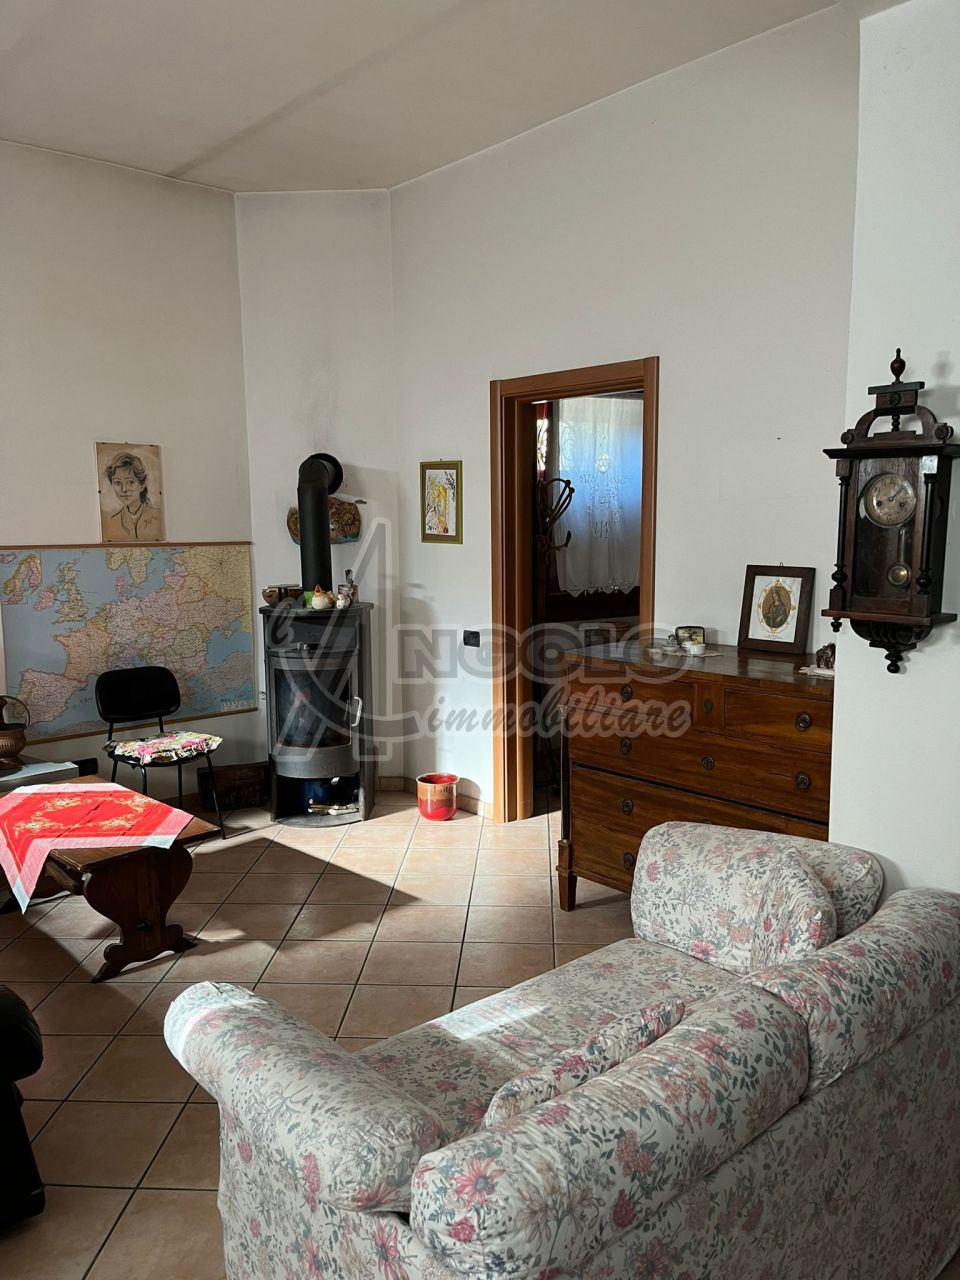 Appartamento in vendita a Stienta, 7 locali, prezzo € 75.000 | CambioCasa.it